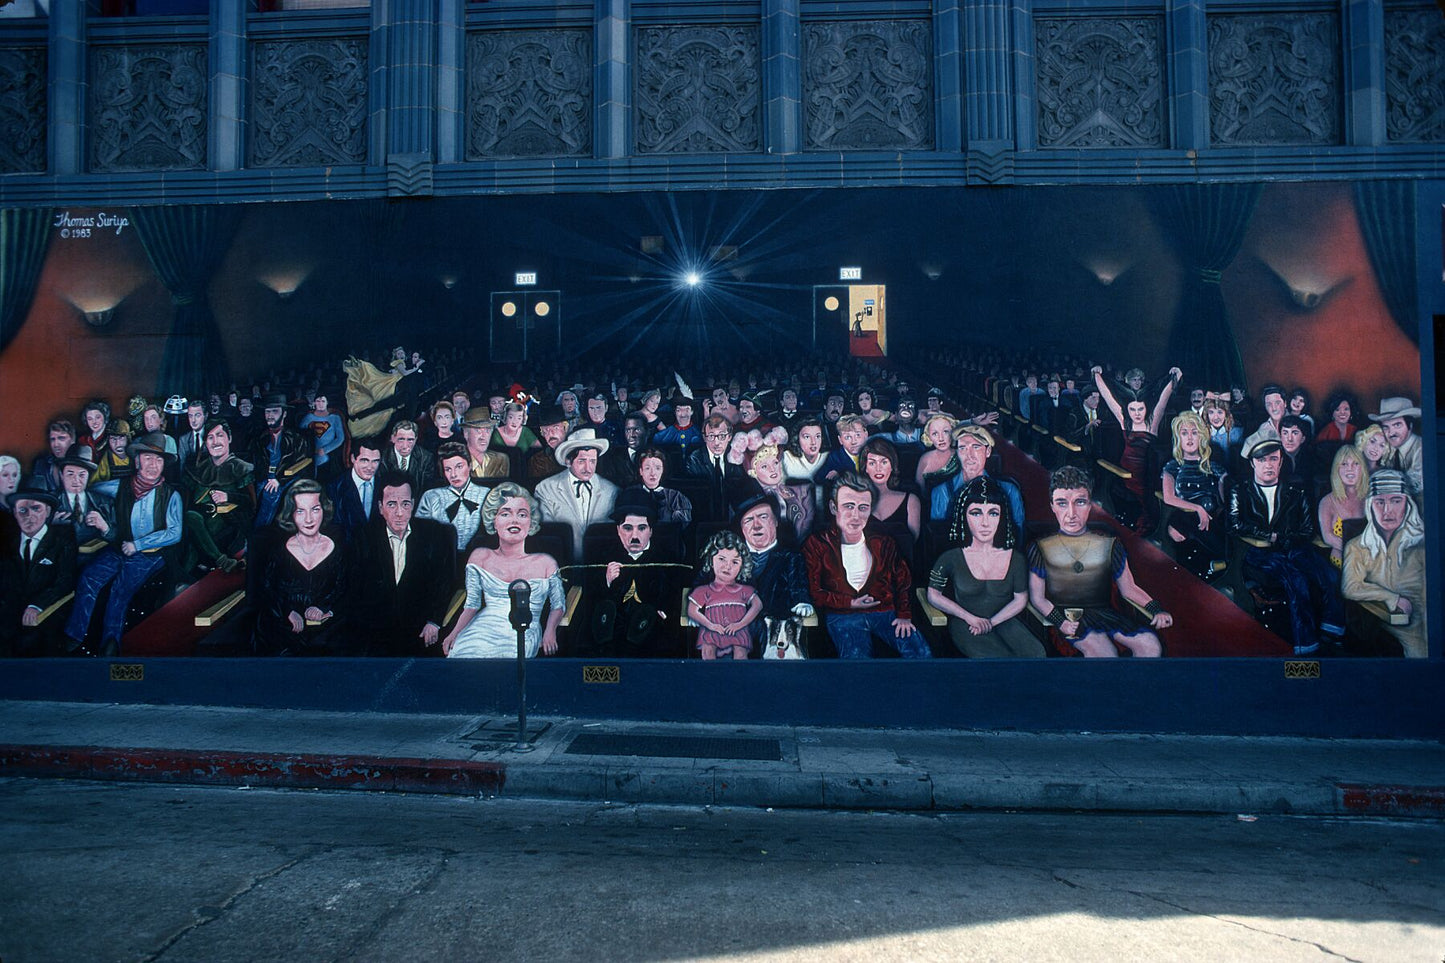 Disneyland in Anaheim California by Gerry Cranham - January 1984